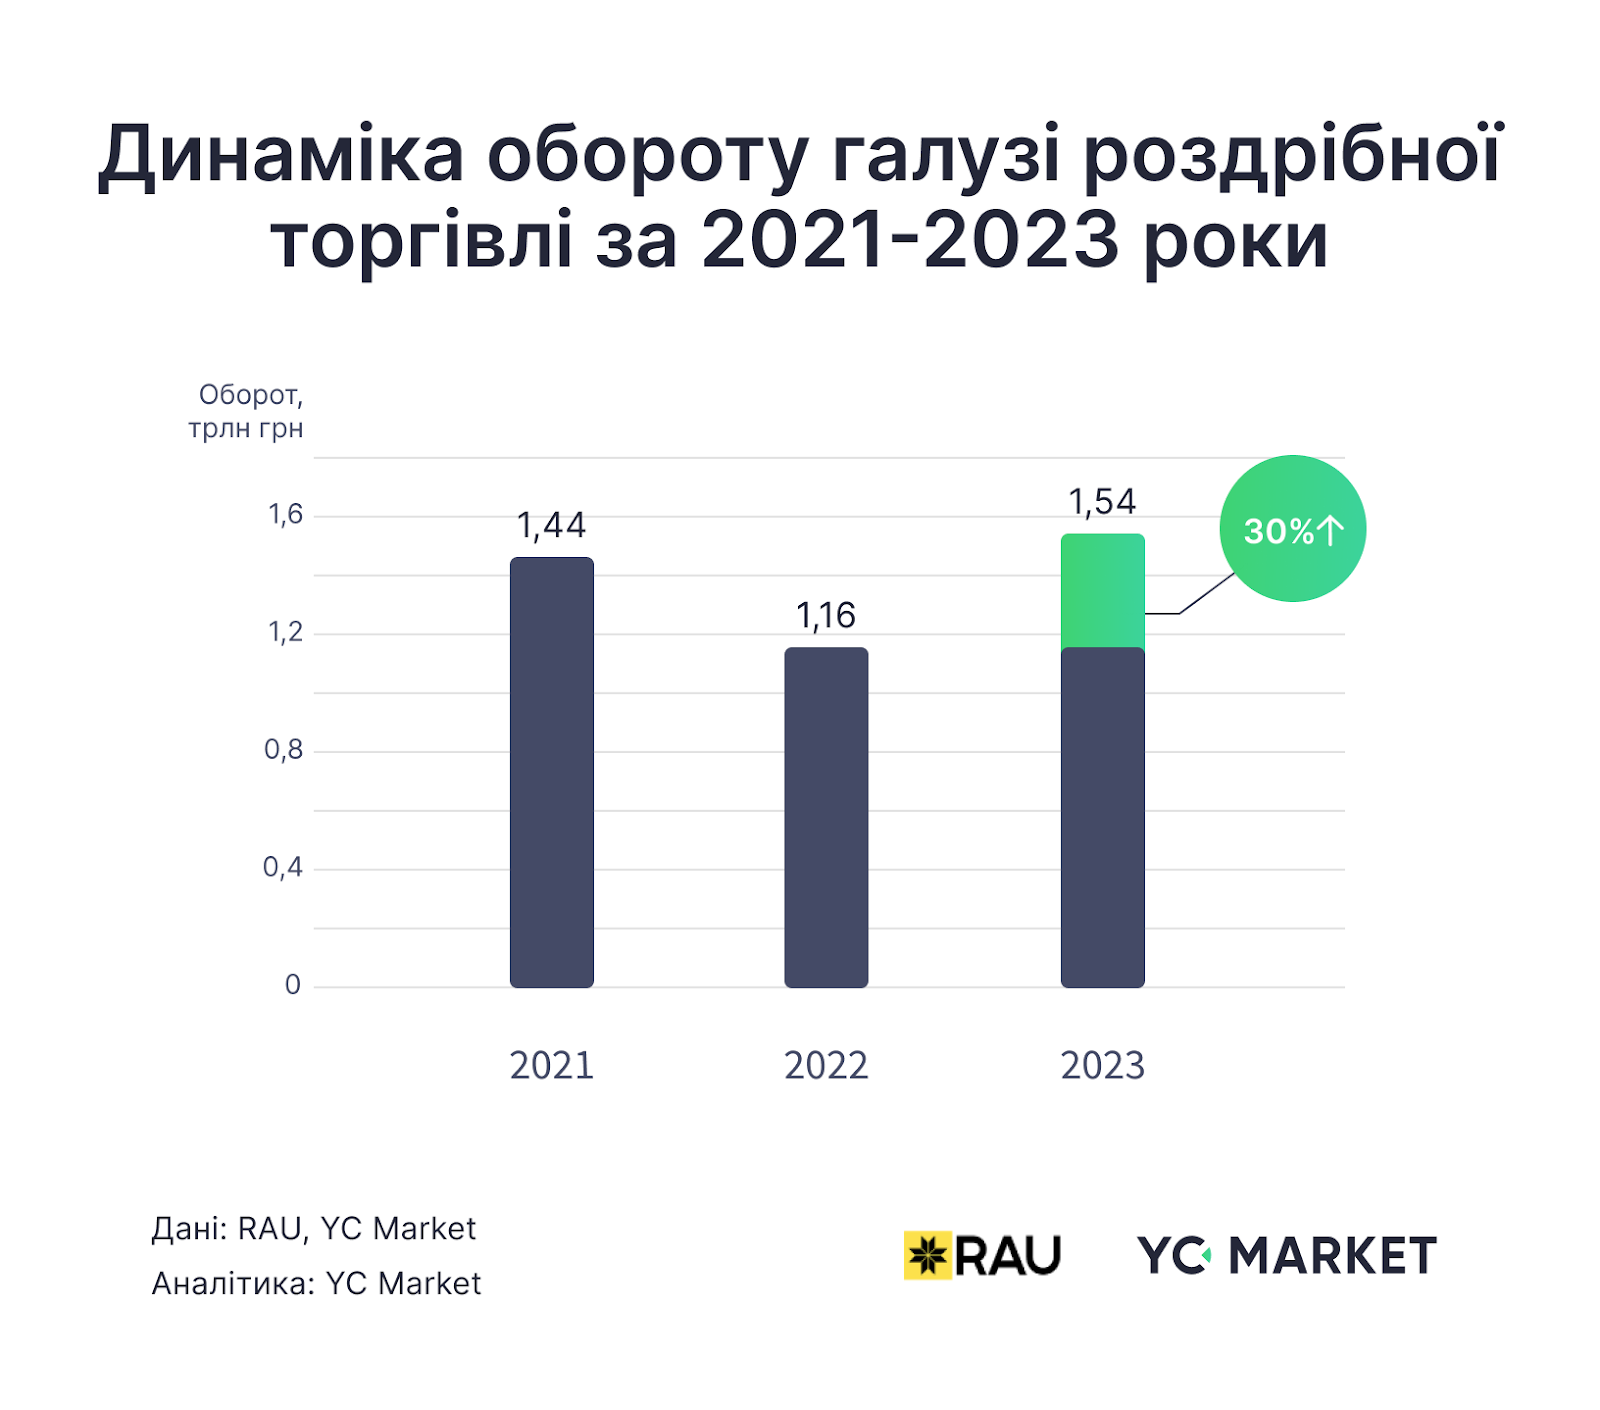 Динаміка обороту галузі роздрібної торгівлі за 2021-2023 роки